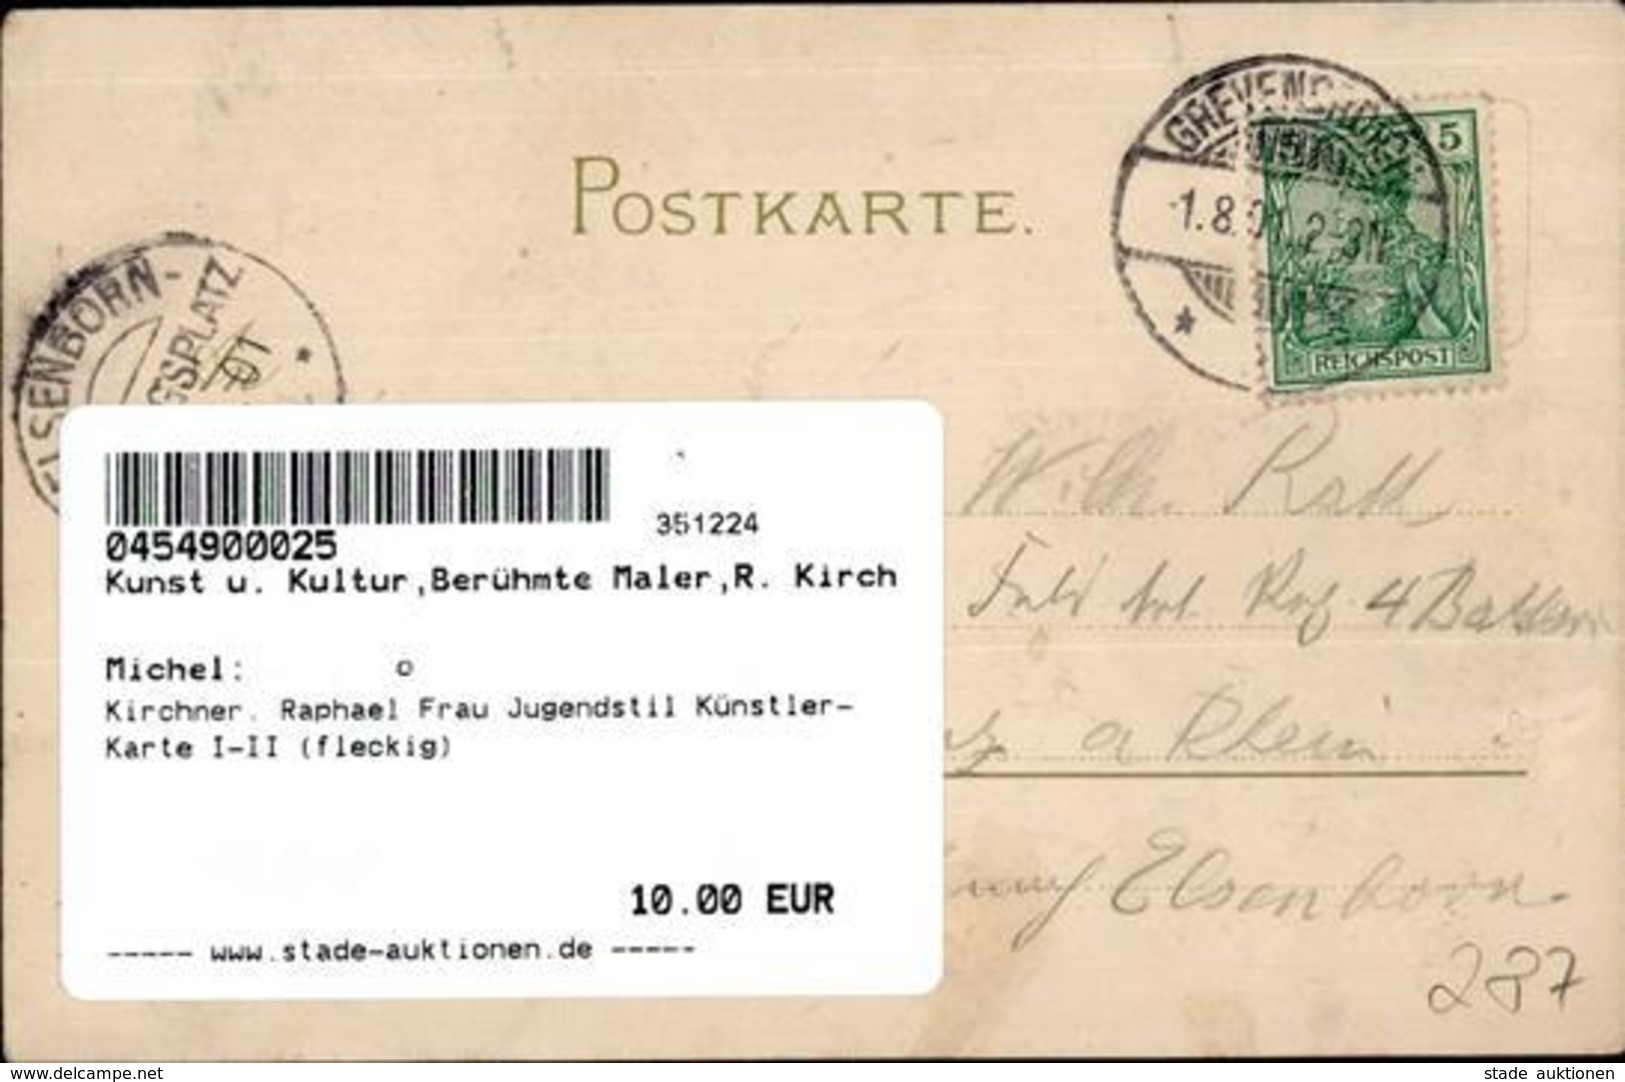 Kirchner, Raphael Frau Jugendstil Künstler-Karte I-II (fleckig) Art Nouveau - Kirchner, Raphael